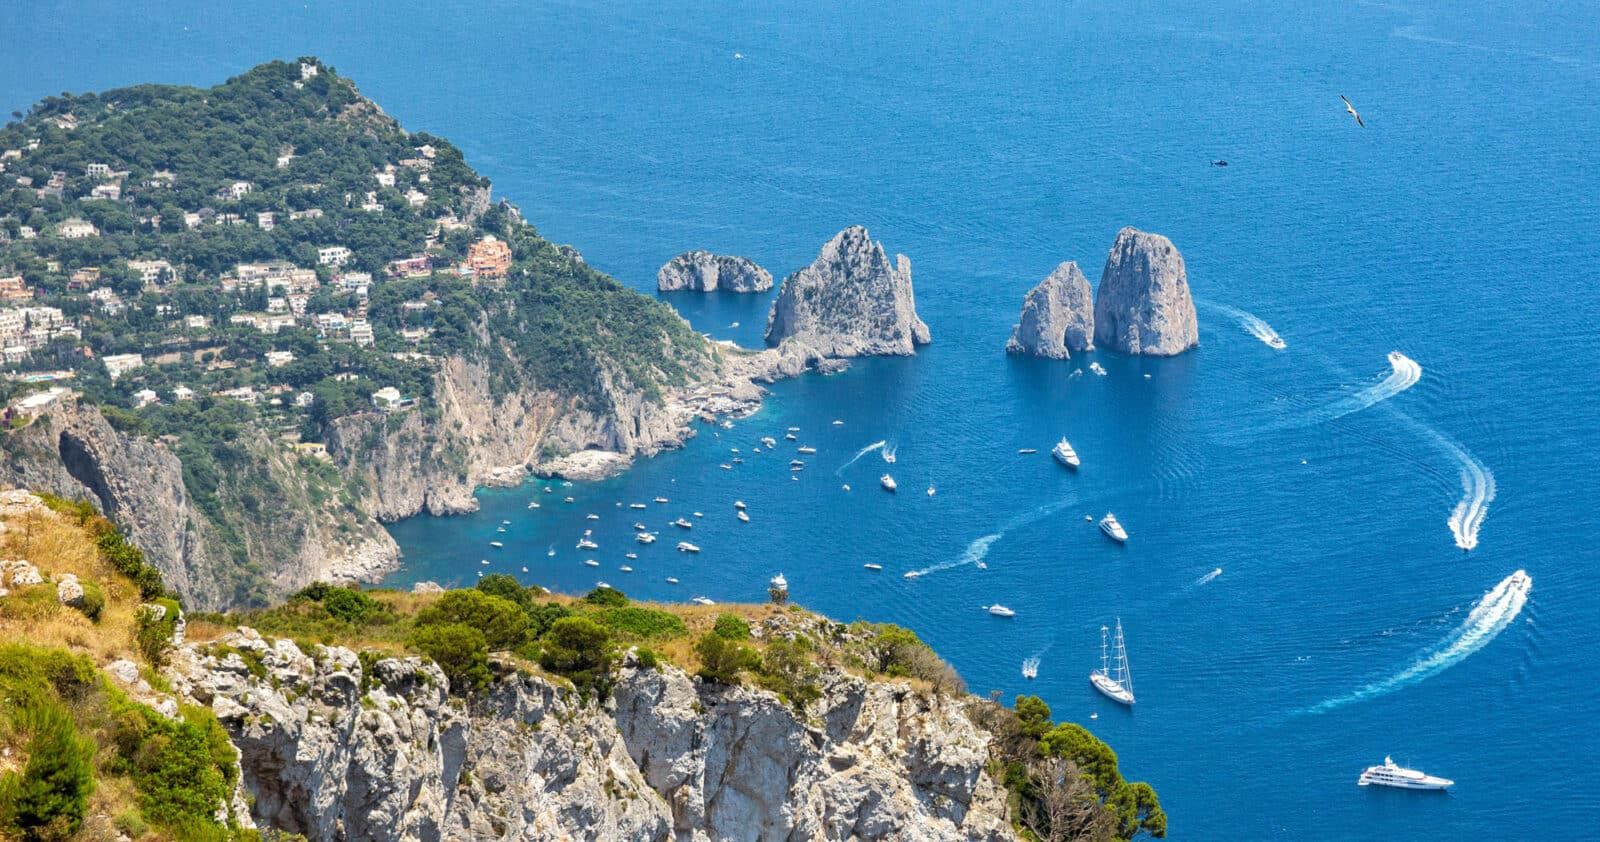 One Day in Capri